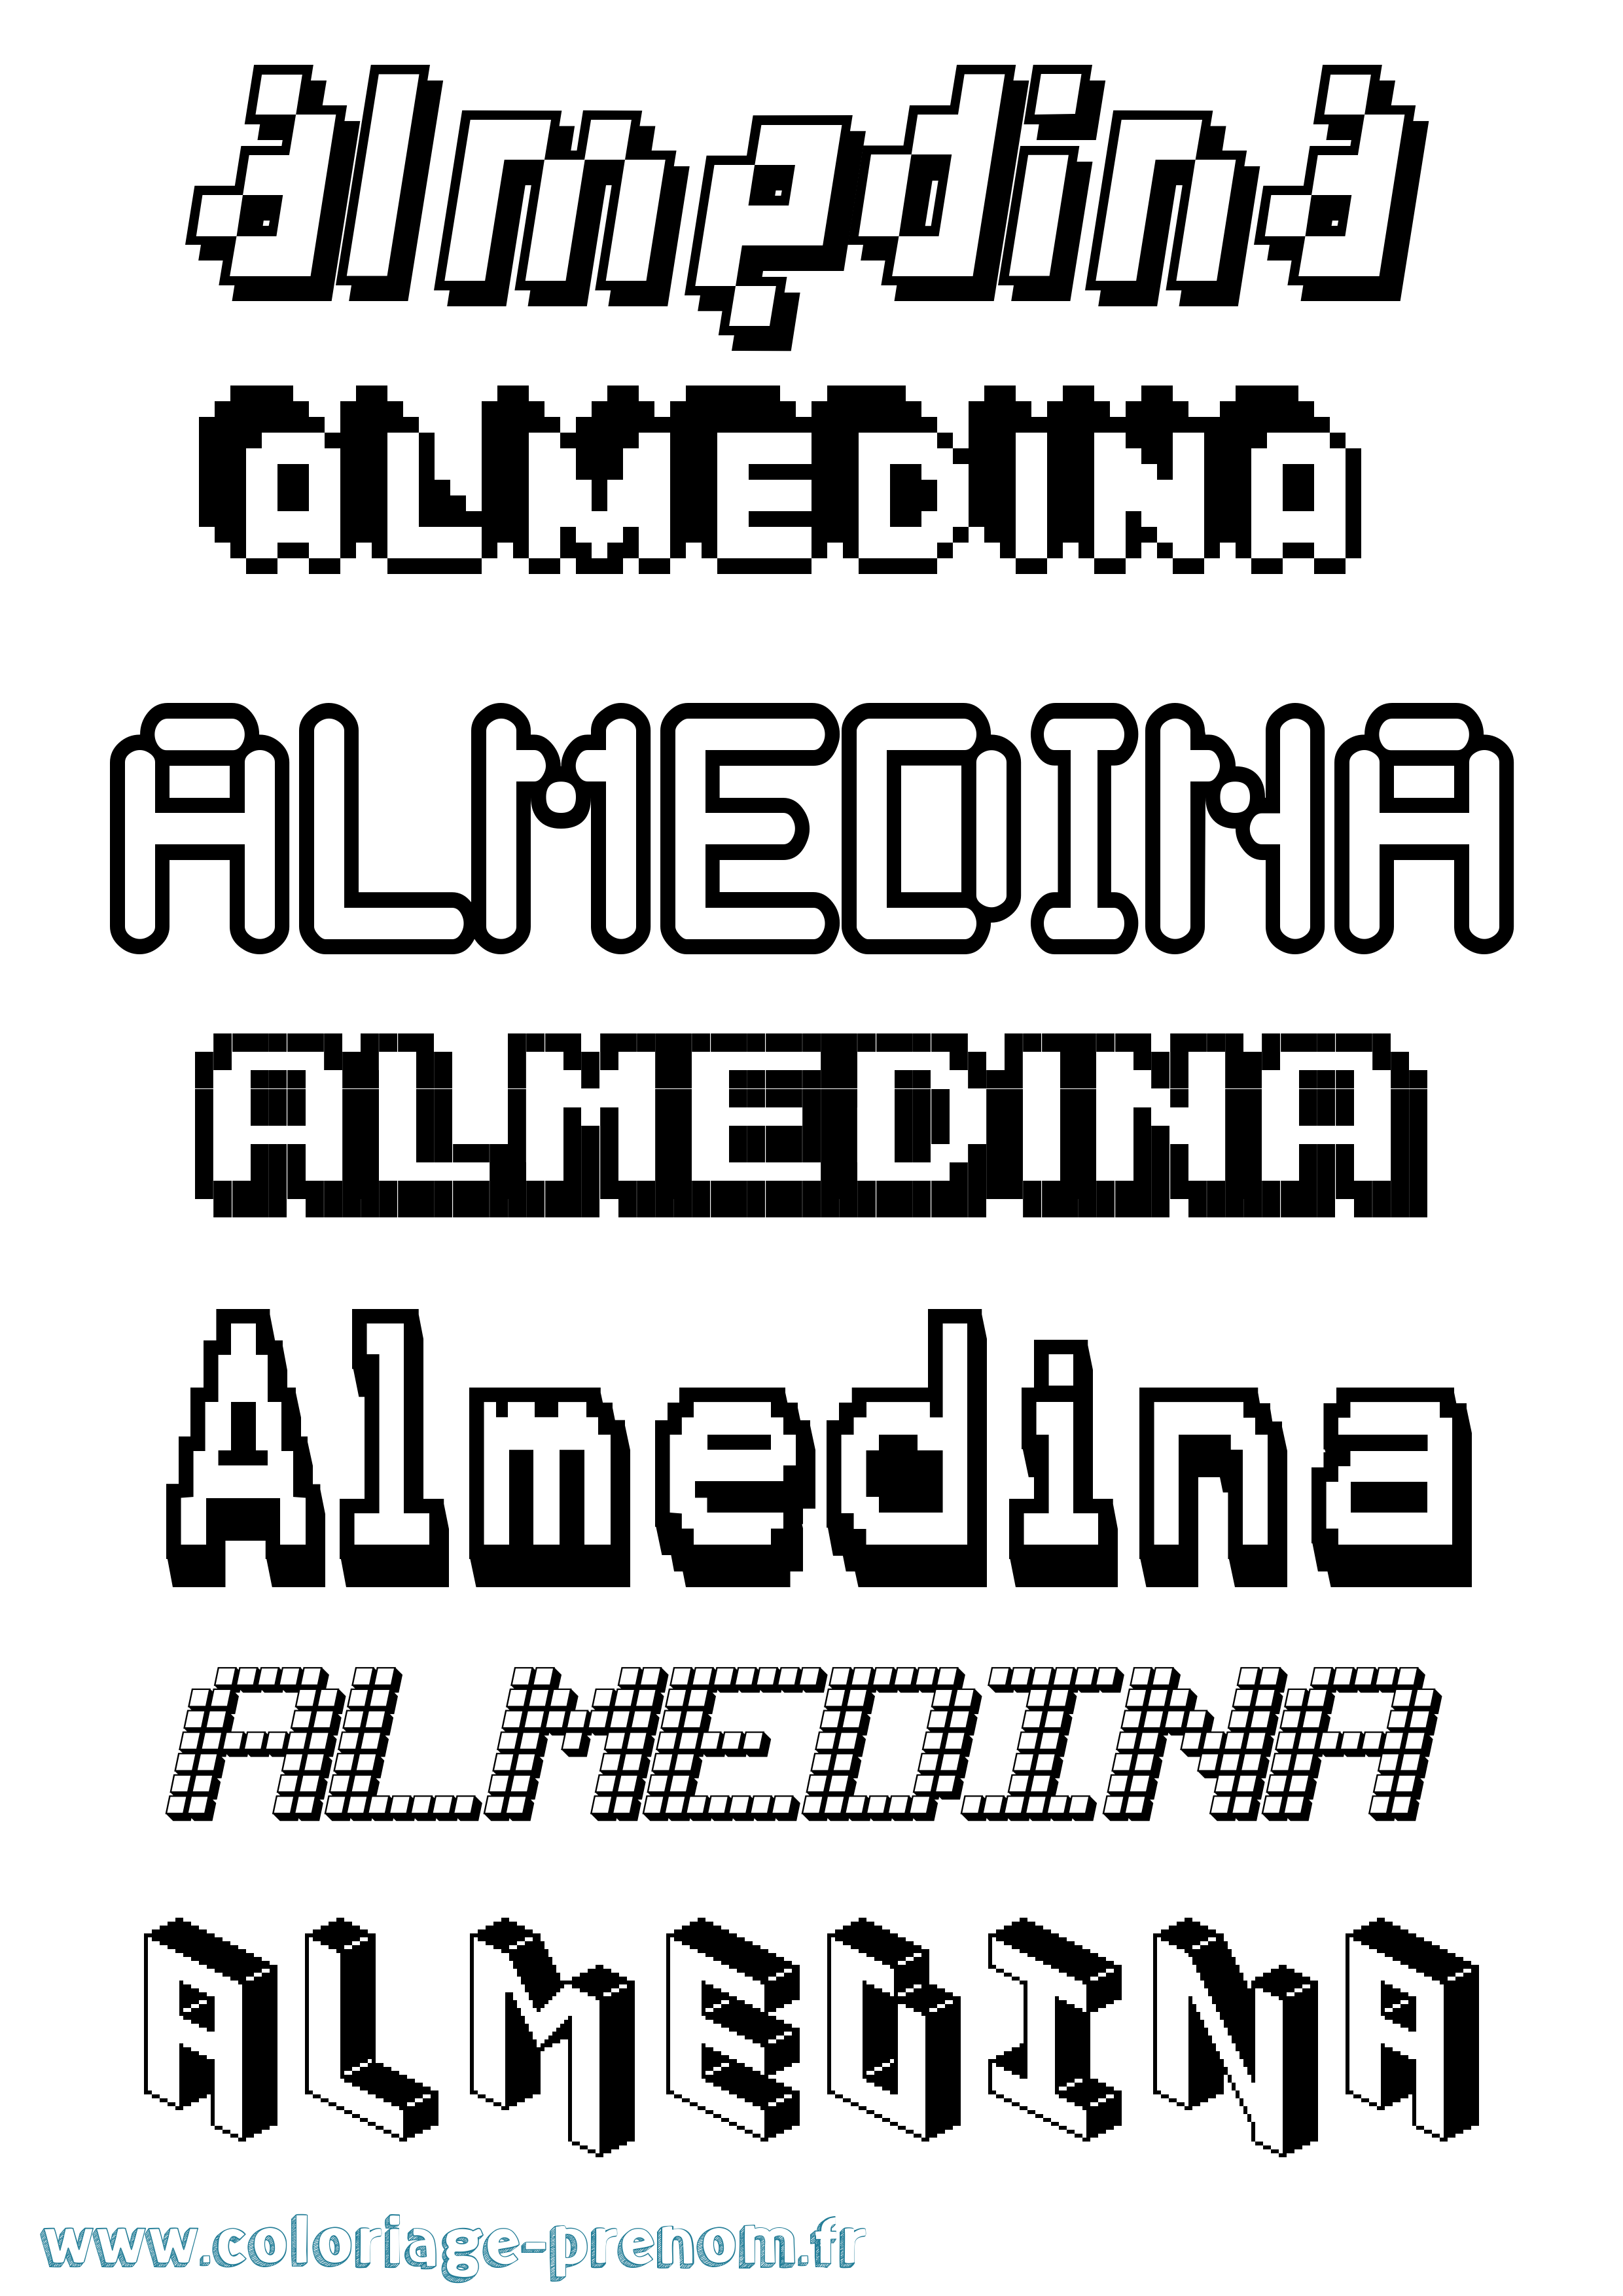 Coloriage prénom Almedina Pixel